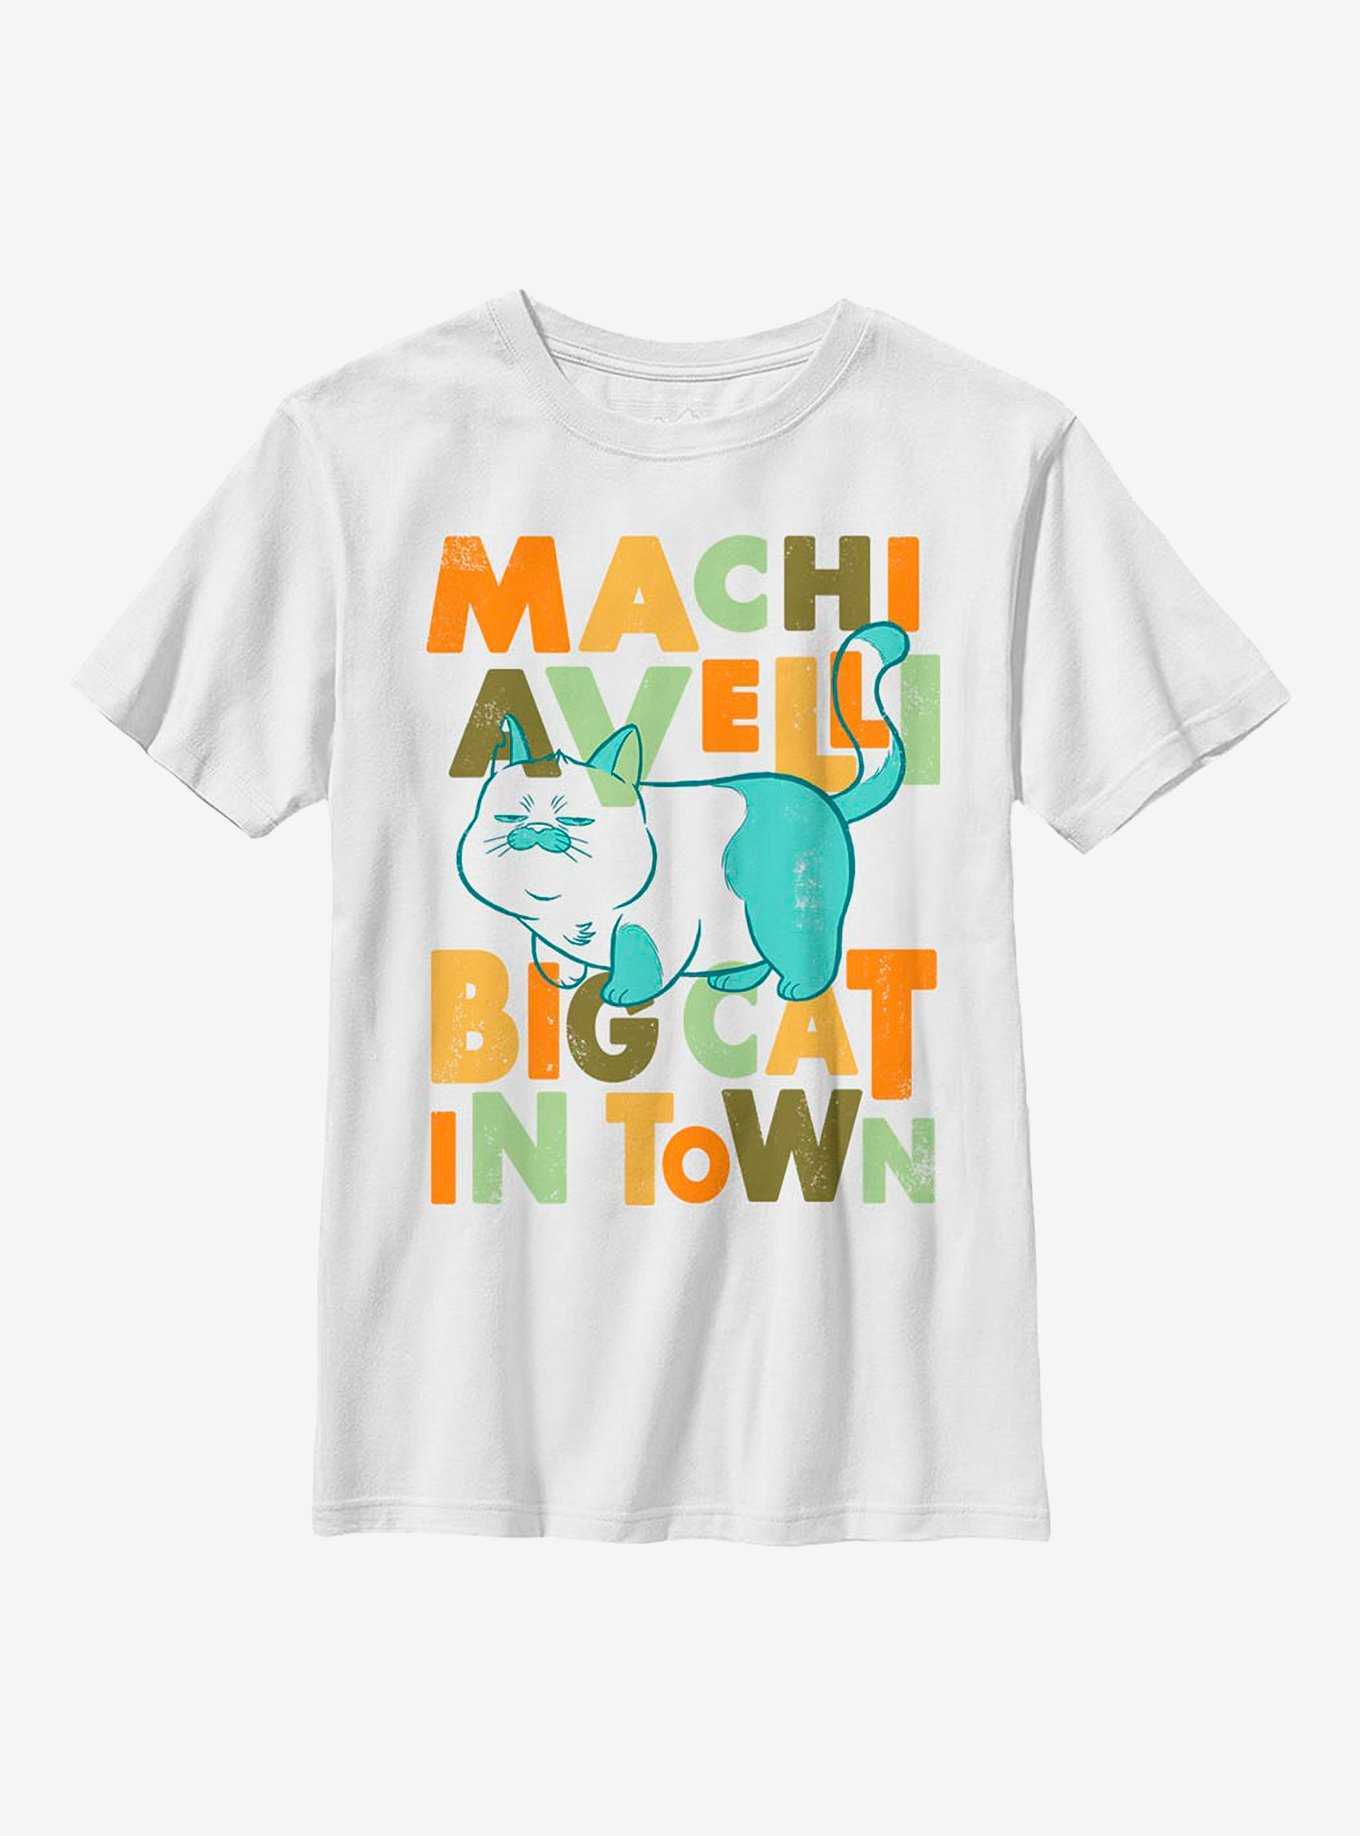 Disney Pixar Luca Machiavelli Big Cat In Town Youth T-Shirt, , hi-res